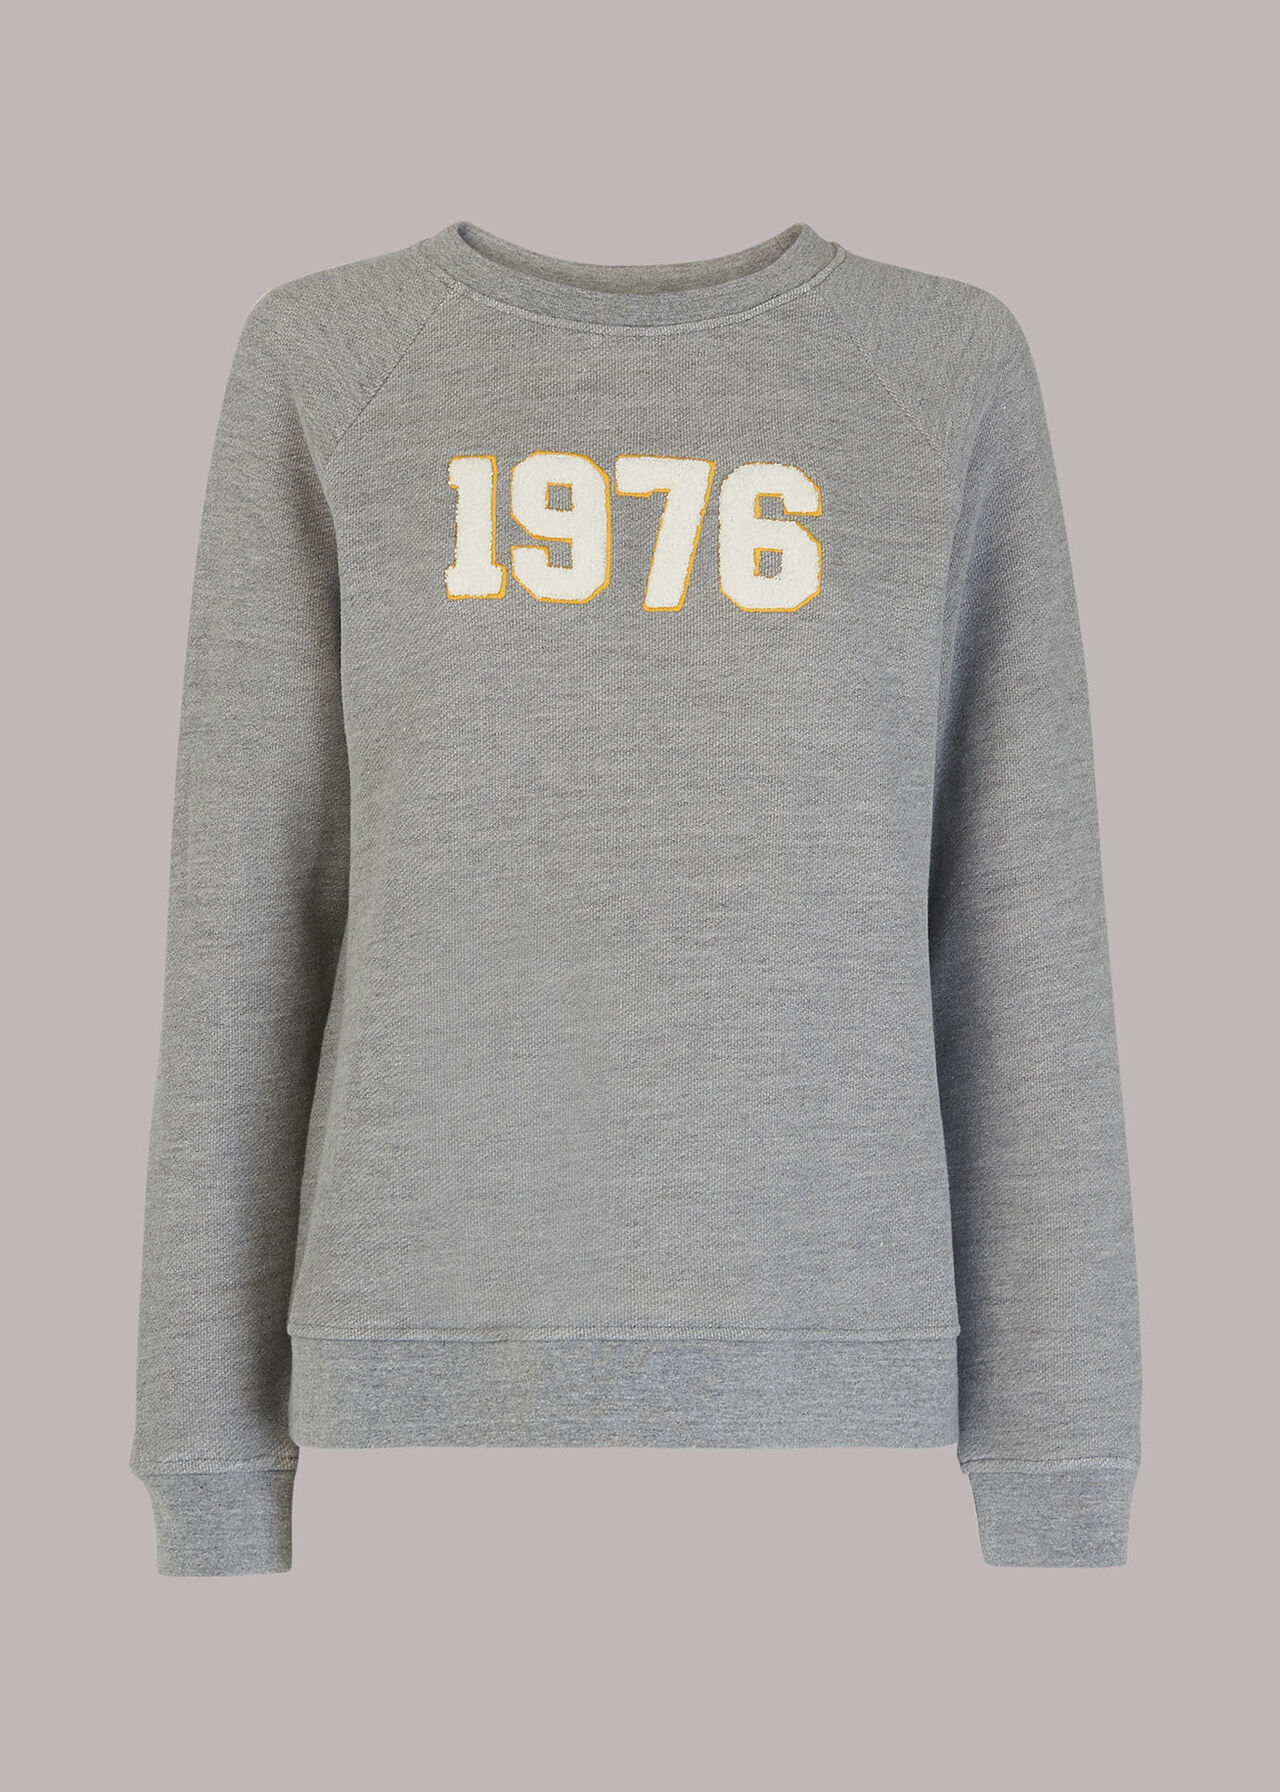 1976 Sweatshirt